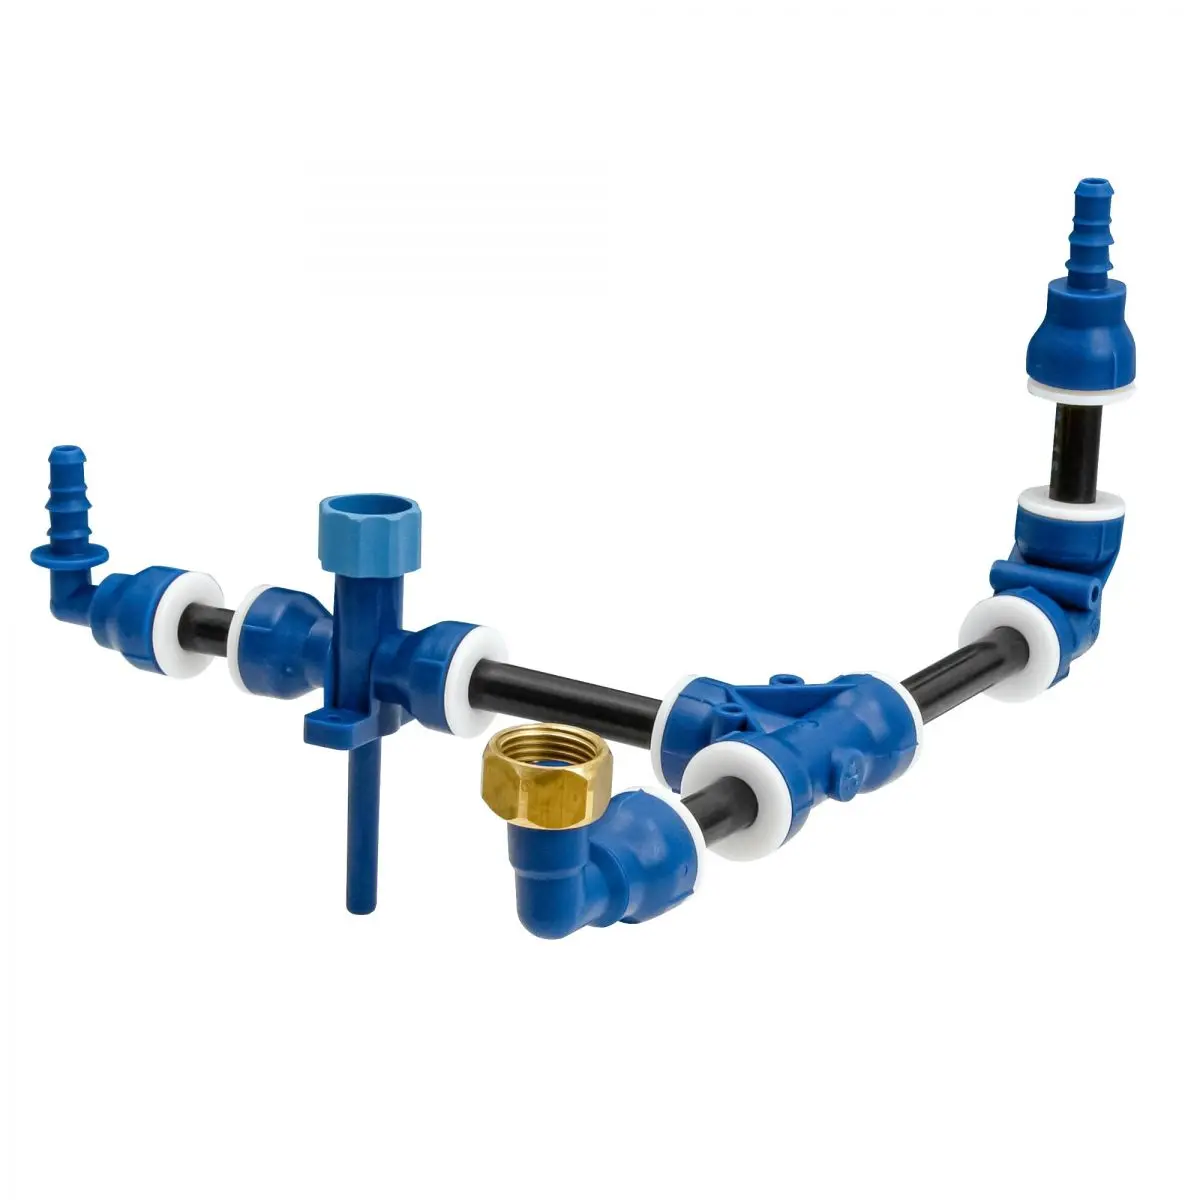 Spätný ventil (potrubie) - systém Uniquick na čerstvú vodu